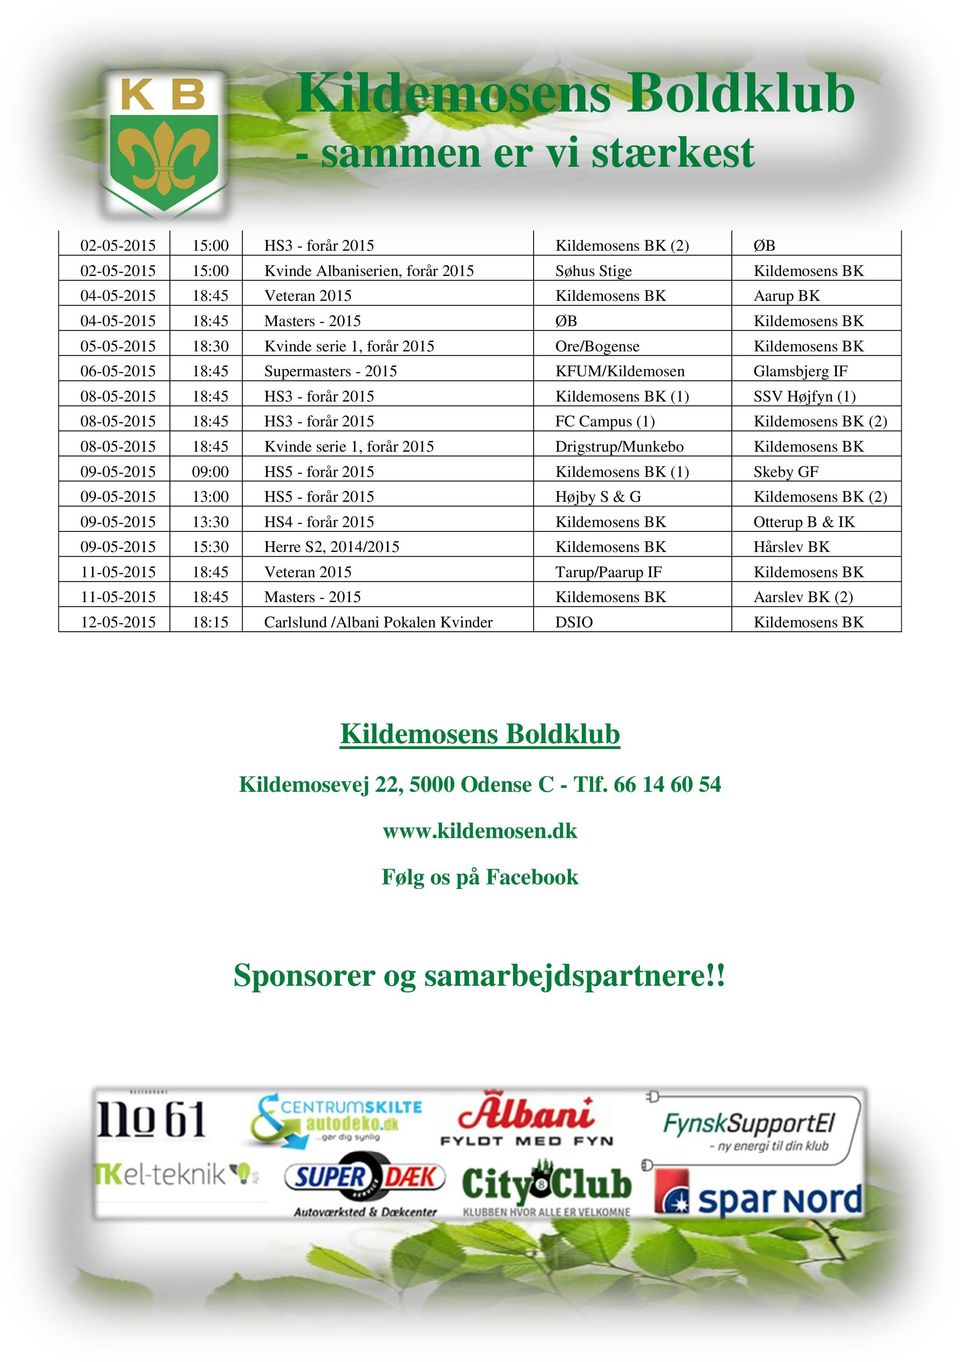 forår 2015 Kildemosens BK (1) SSV Højfyn (1) 08-05-2015 18:45 HS3 - forår 2015 FC Campus (1) Kildemosens BK (2) 08-05-2015 18:45 Kvinde serie 1, forår 2015 Drigstrup/Munkebo Kildemosens BK 09-05-2015